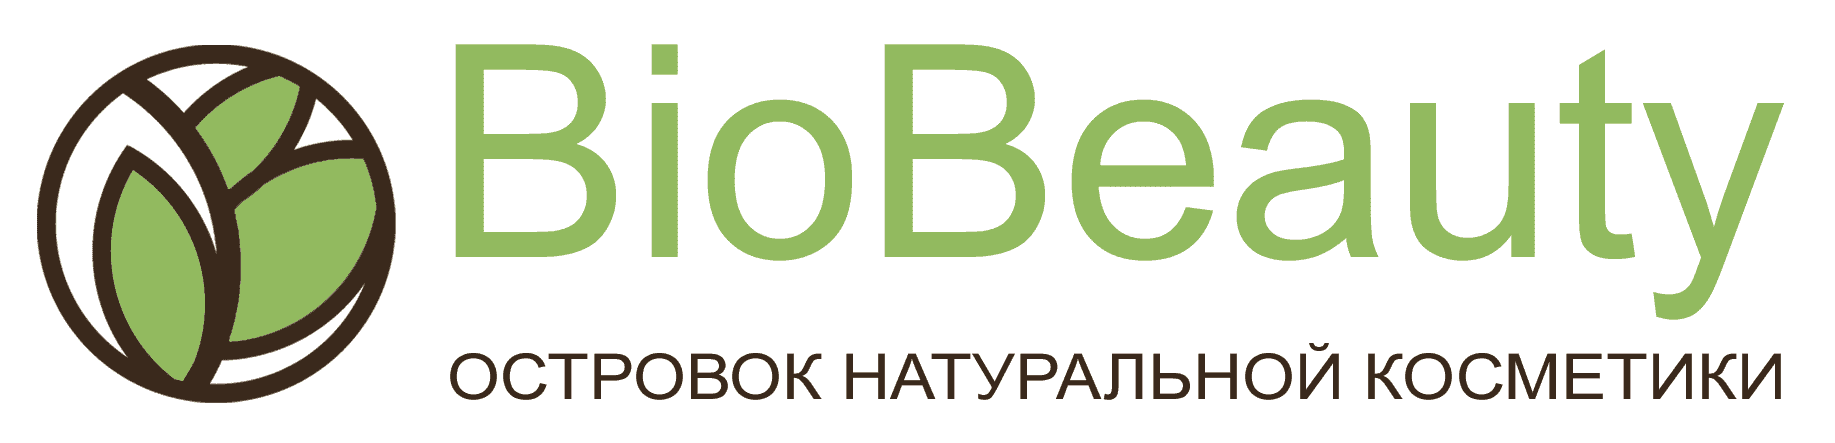 Беларусь Интернет Магазин С Нуля